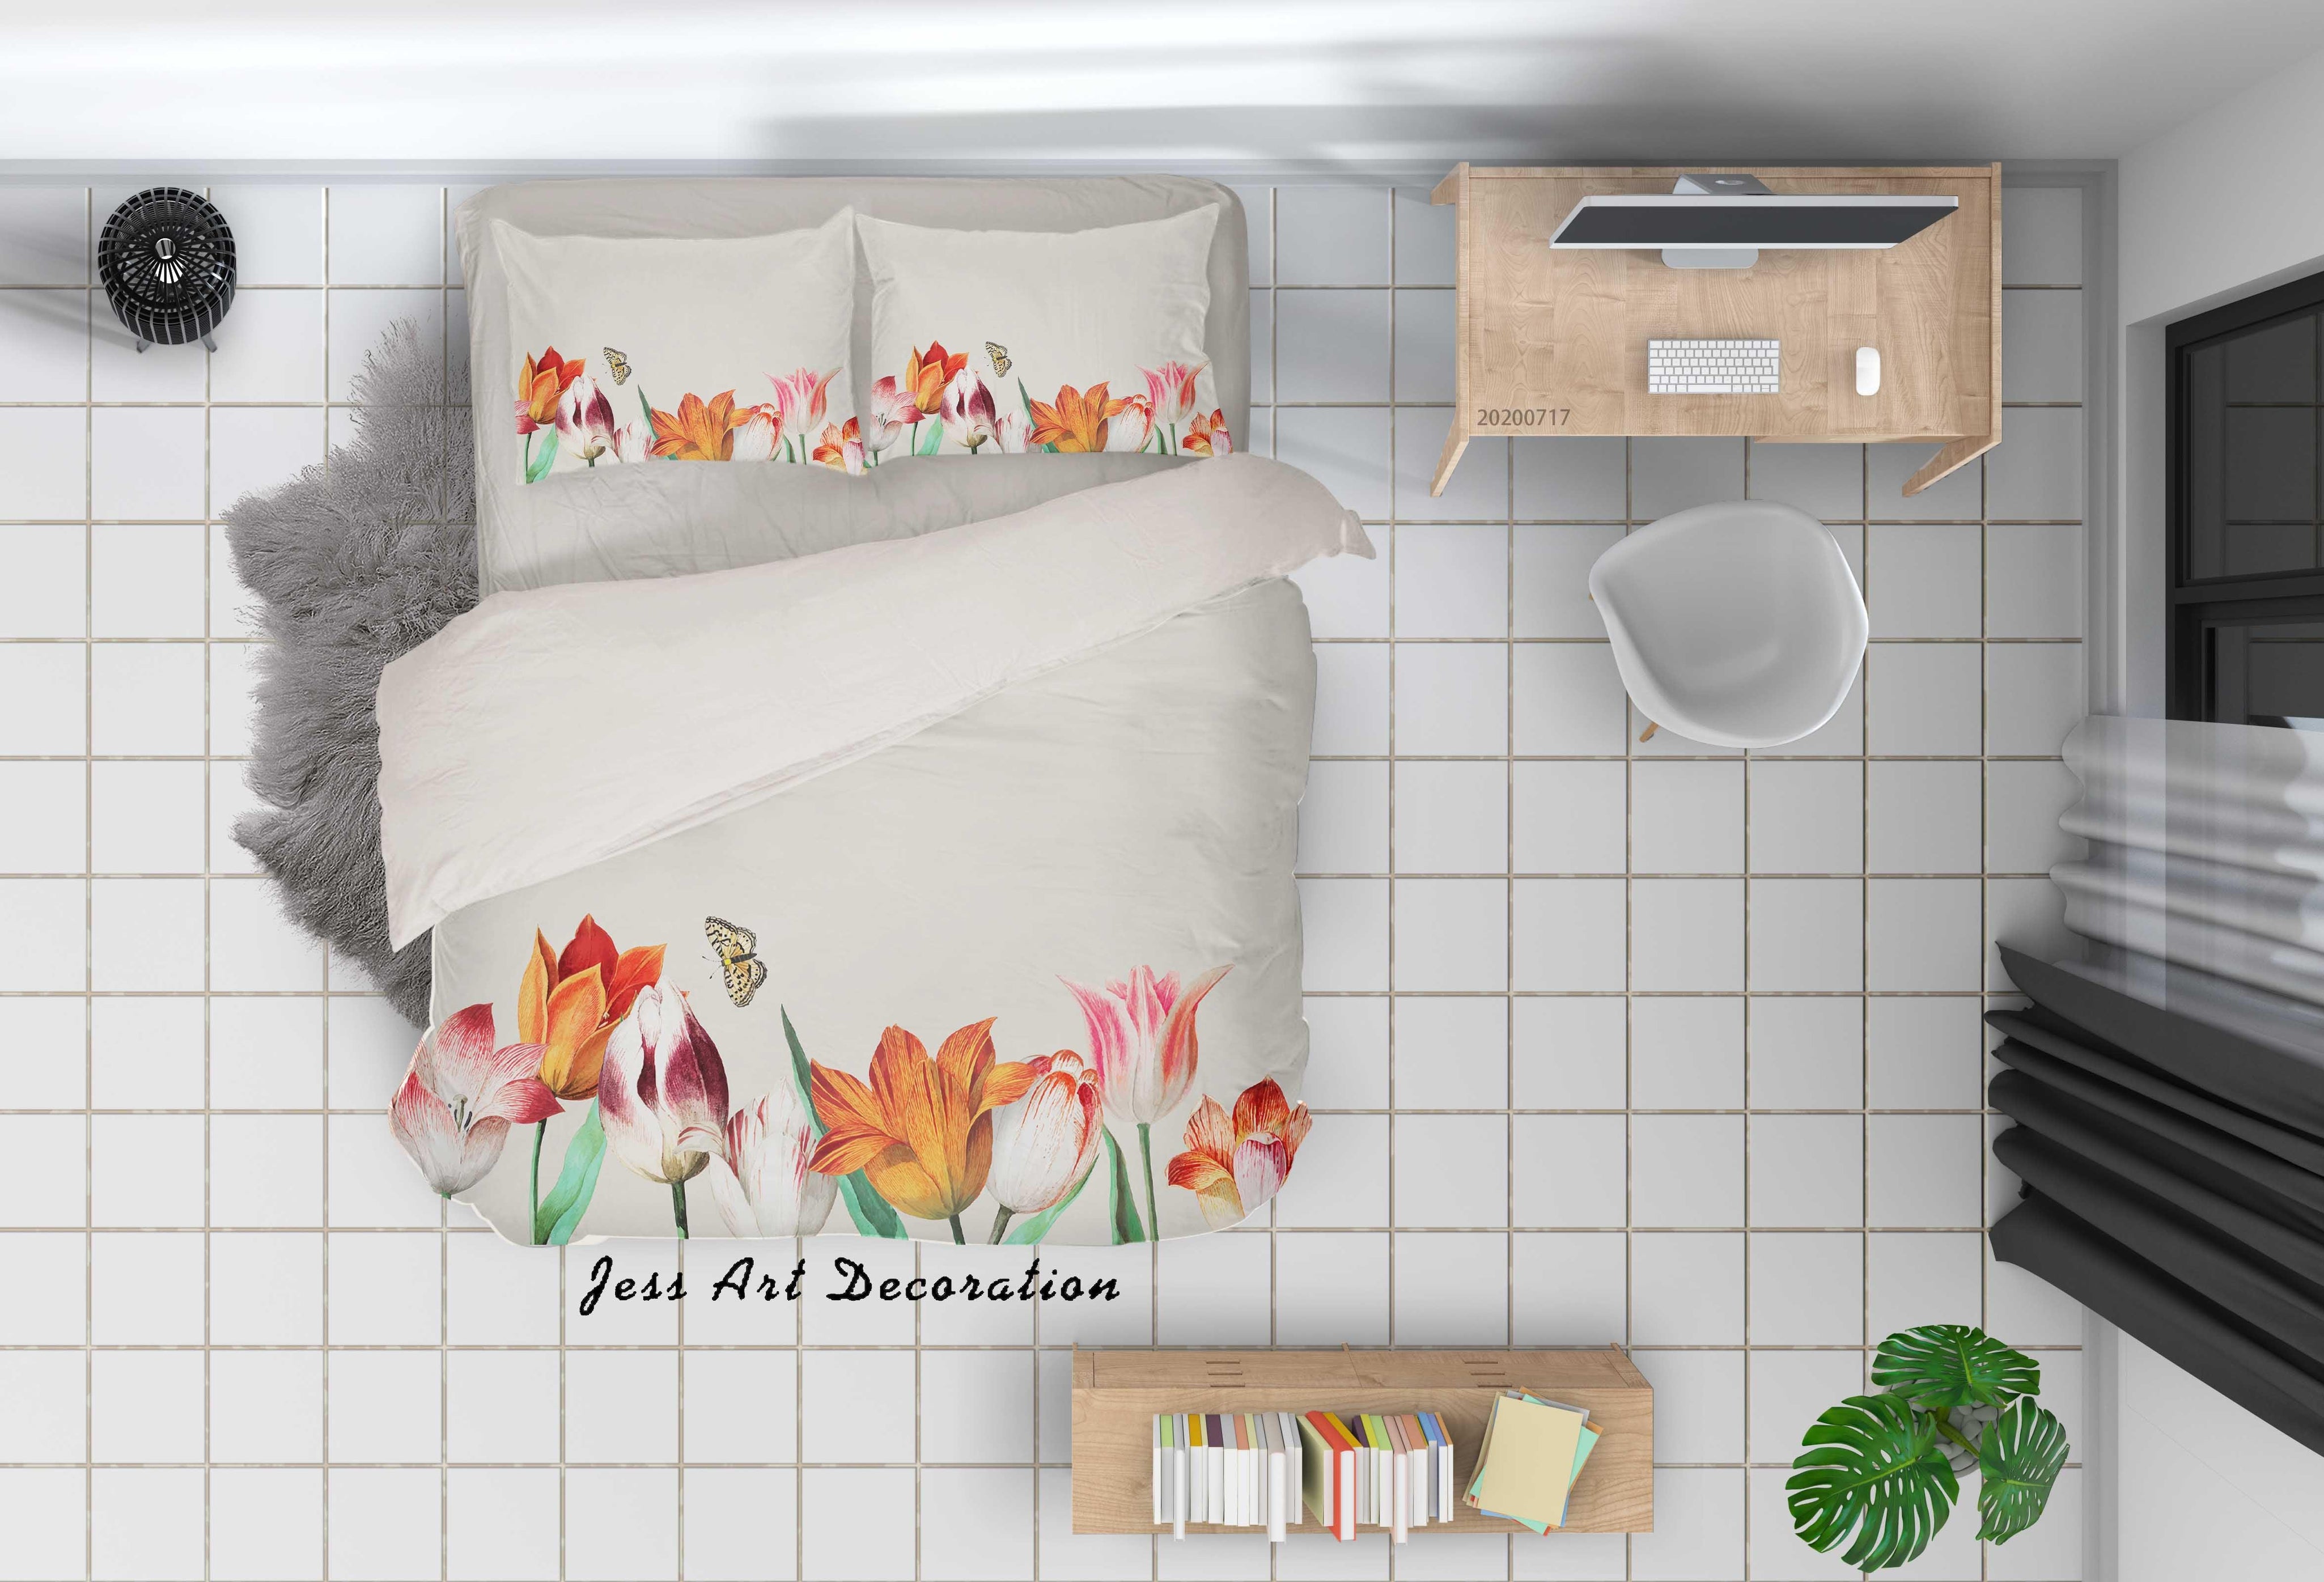 3D Vintage Floral Quilt Cover Set Bedding Set Duvet Cover Pillowcases WJ 1616- Jess Art Decoration